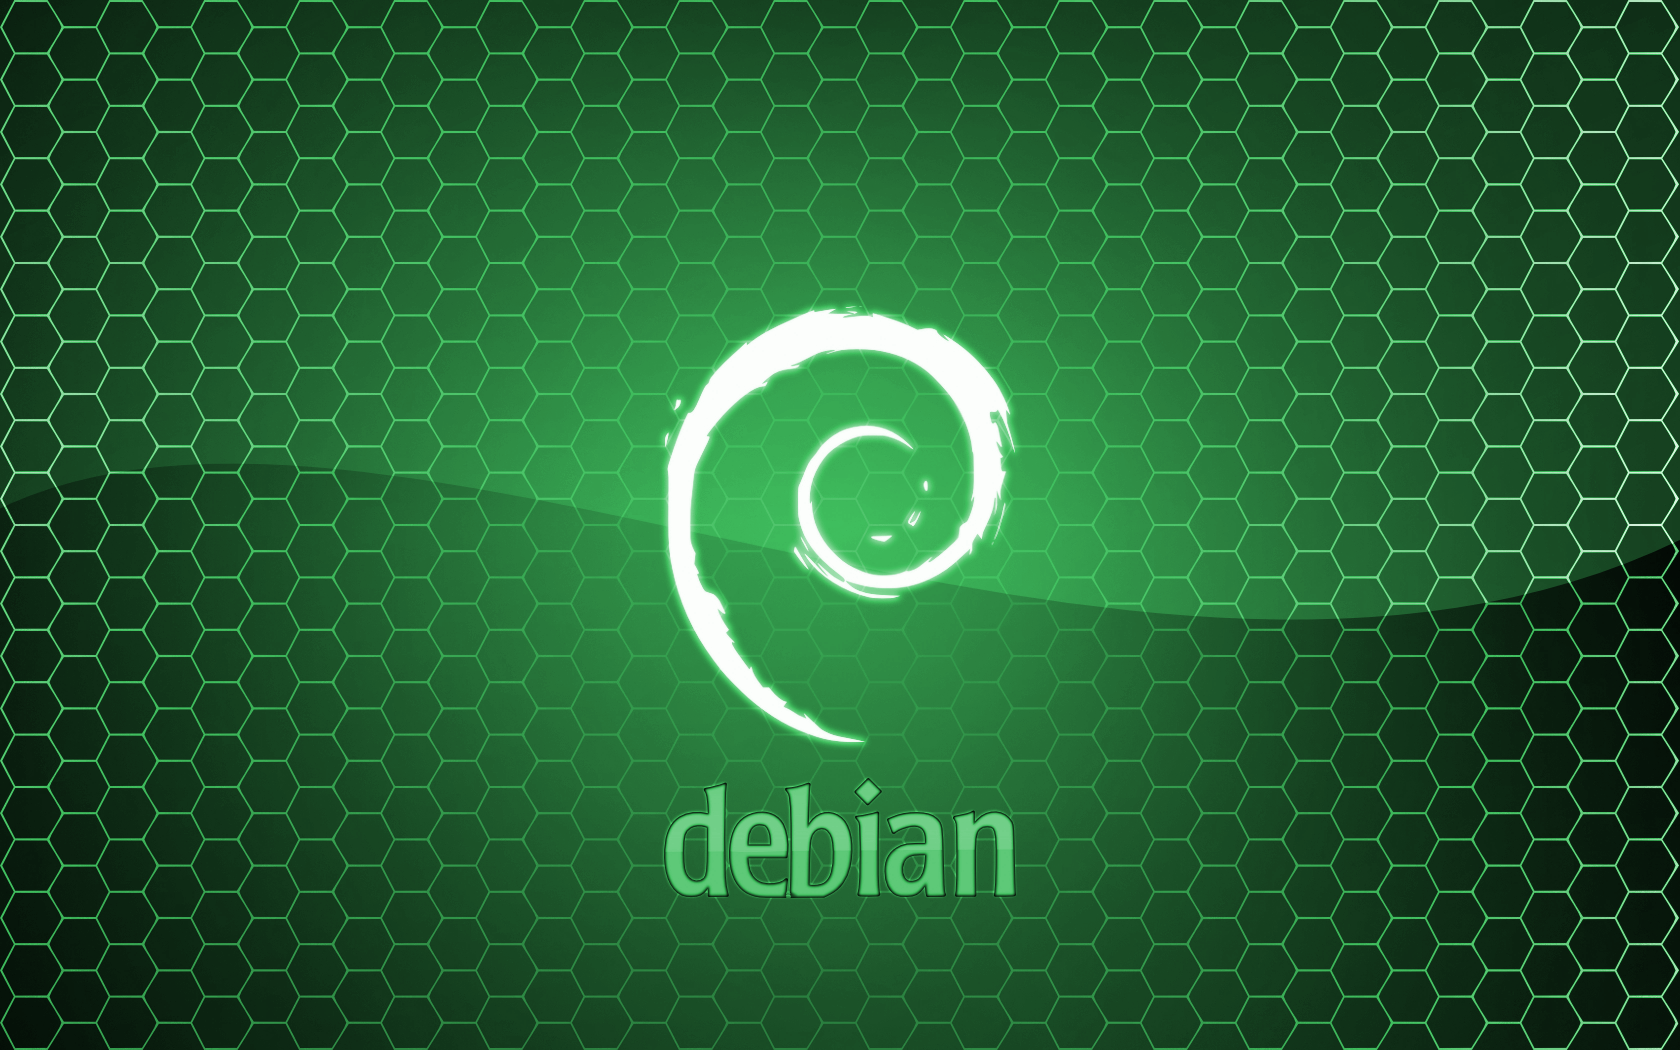 Linux Debian Wallpaper